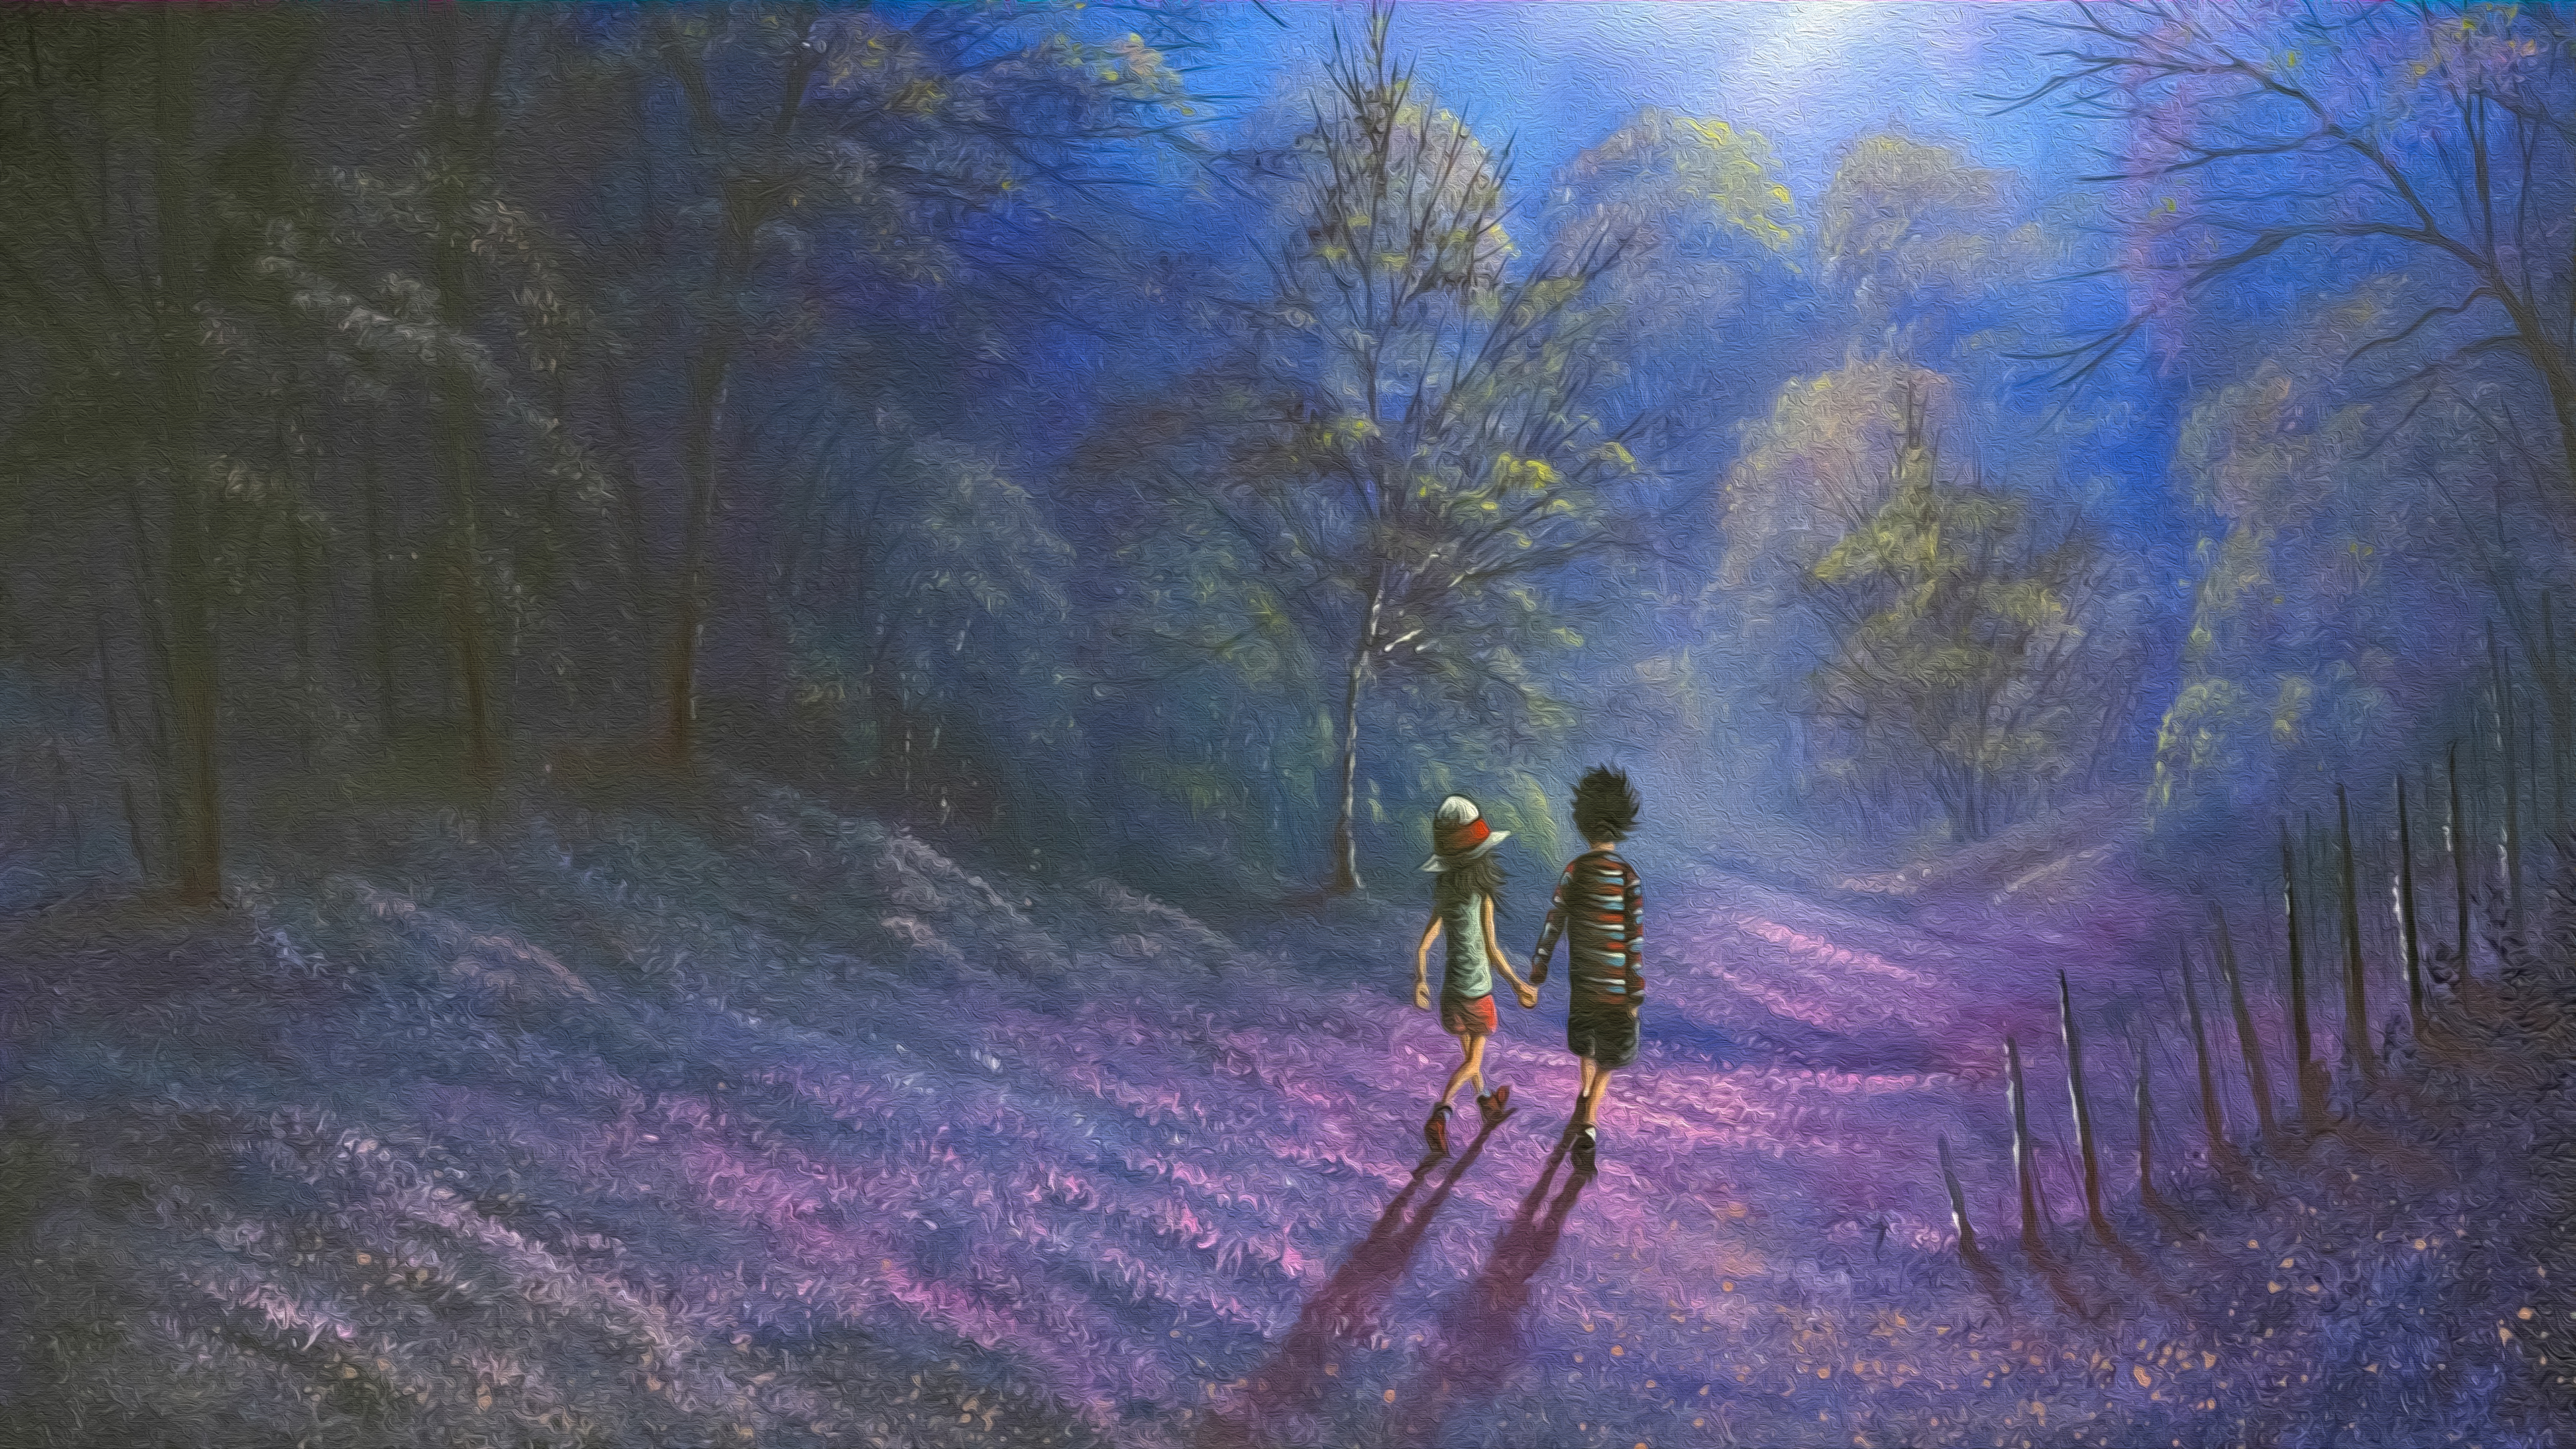 Night Walk - Oil on Canvas by Manufan63